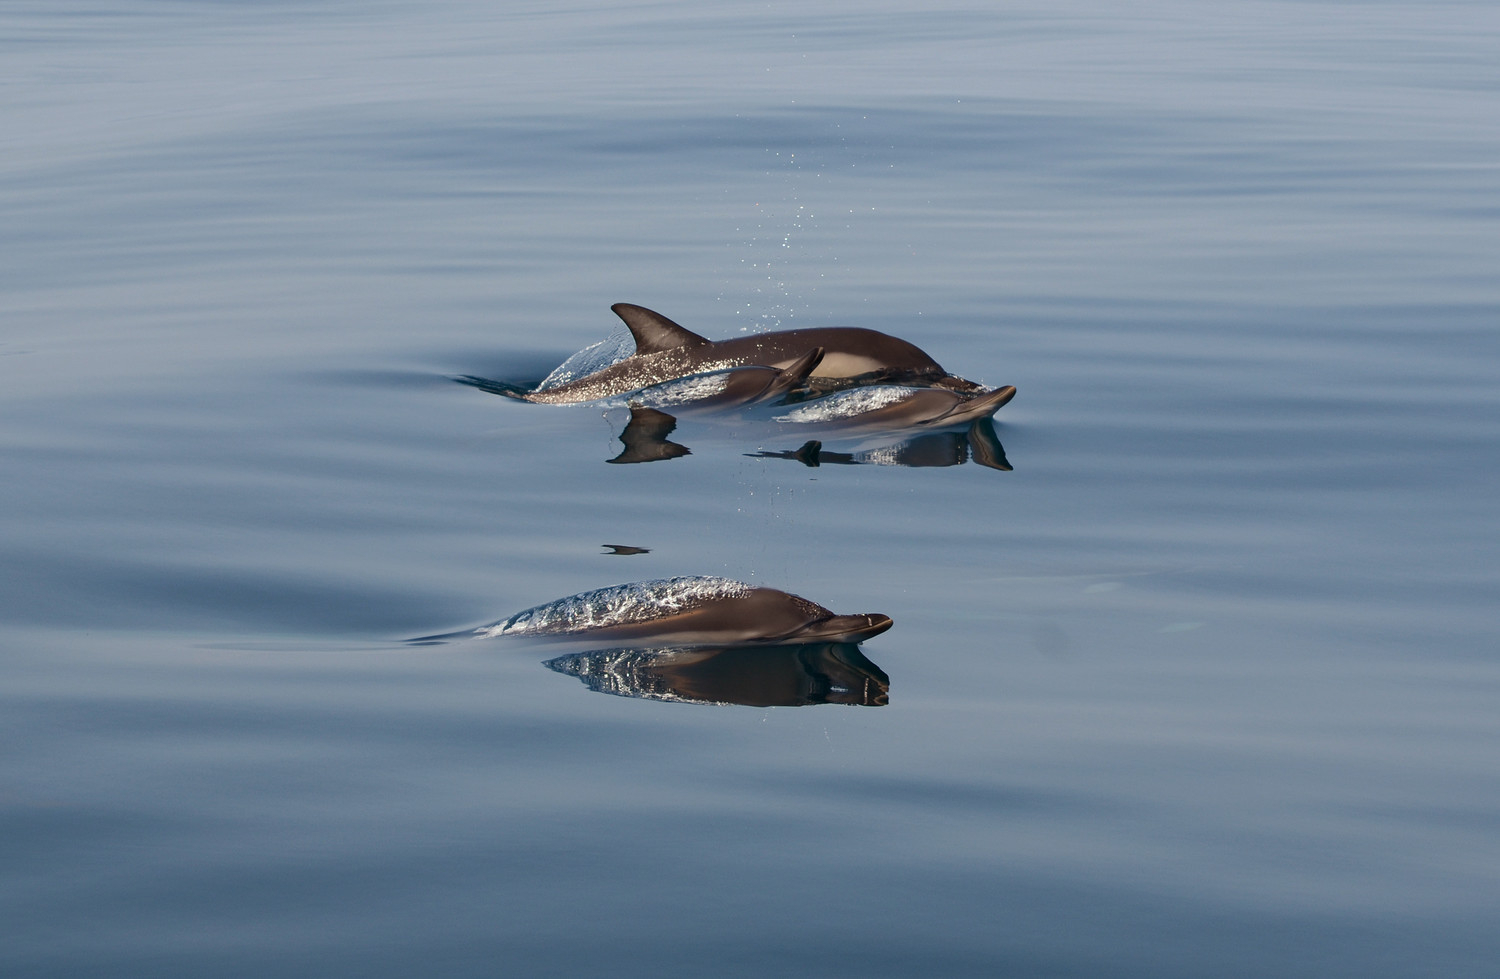 Боевые дельфины могут охранять Севастопольскую бухту от диверсантов